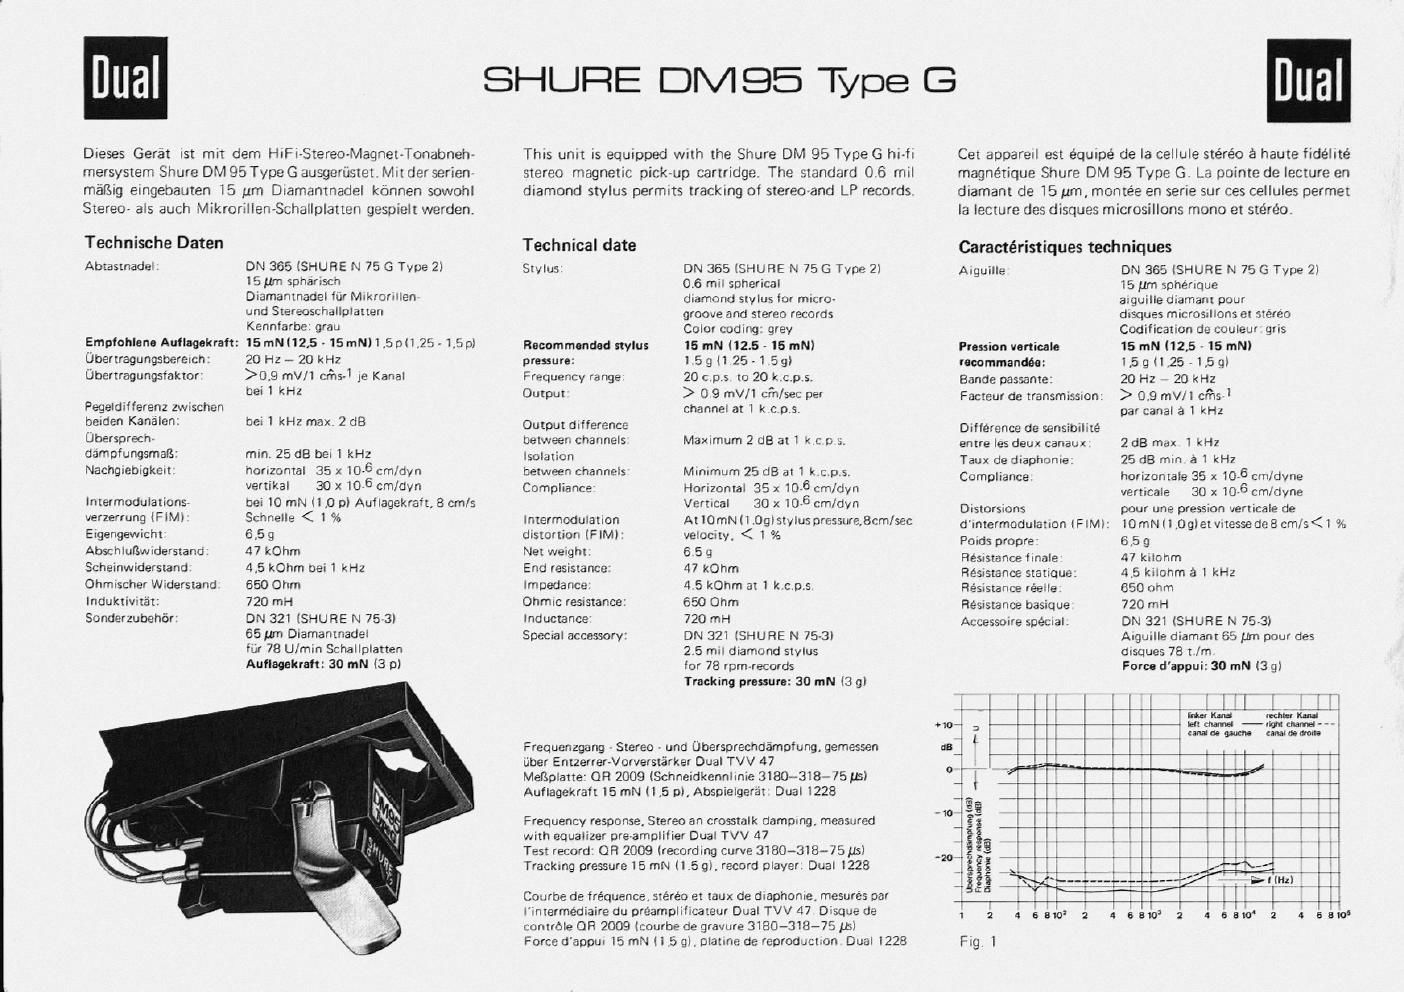 dual shure dm 95g owners manual